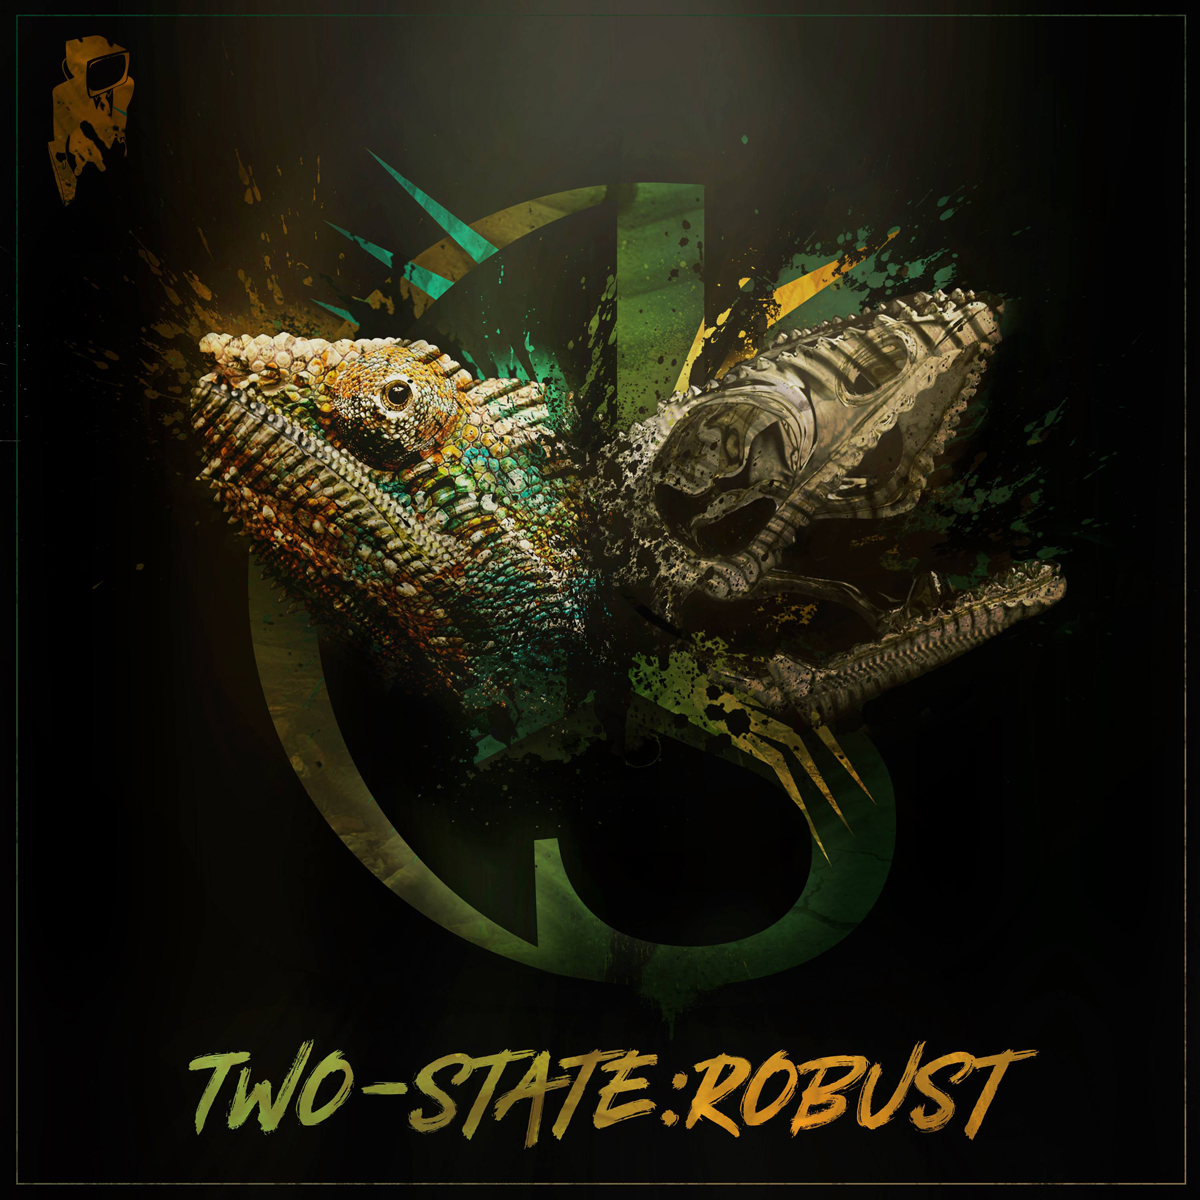 UbuntuFM Reggae | Two-State | "Robust"